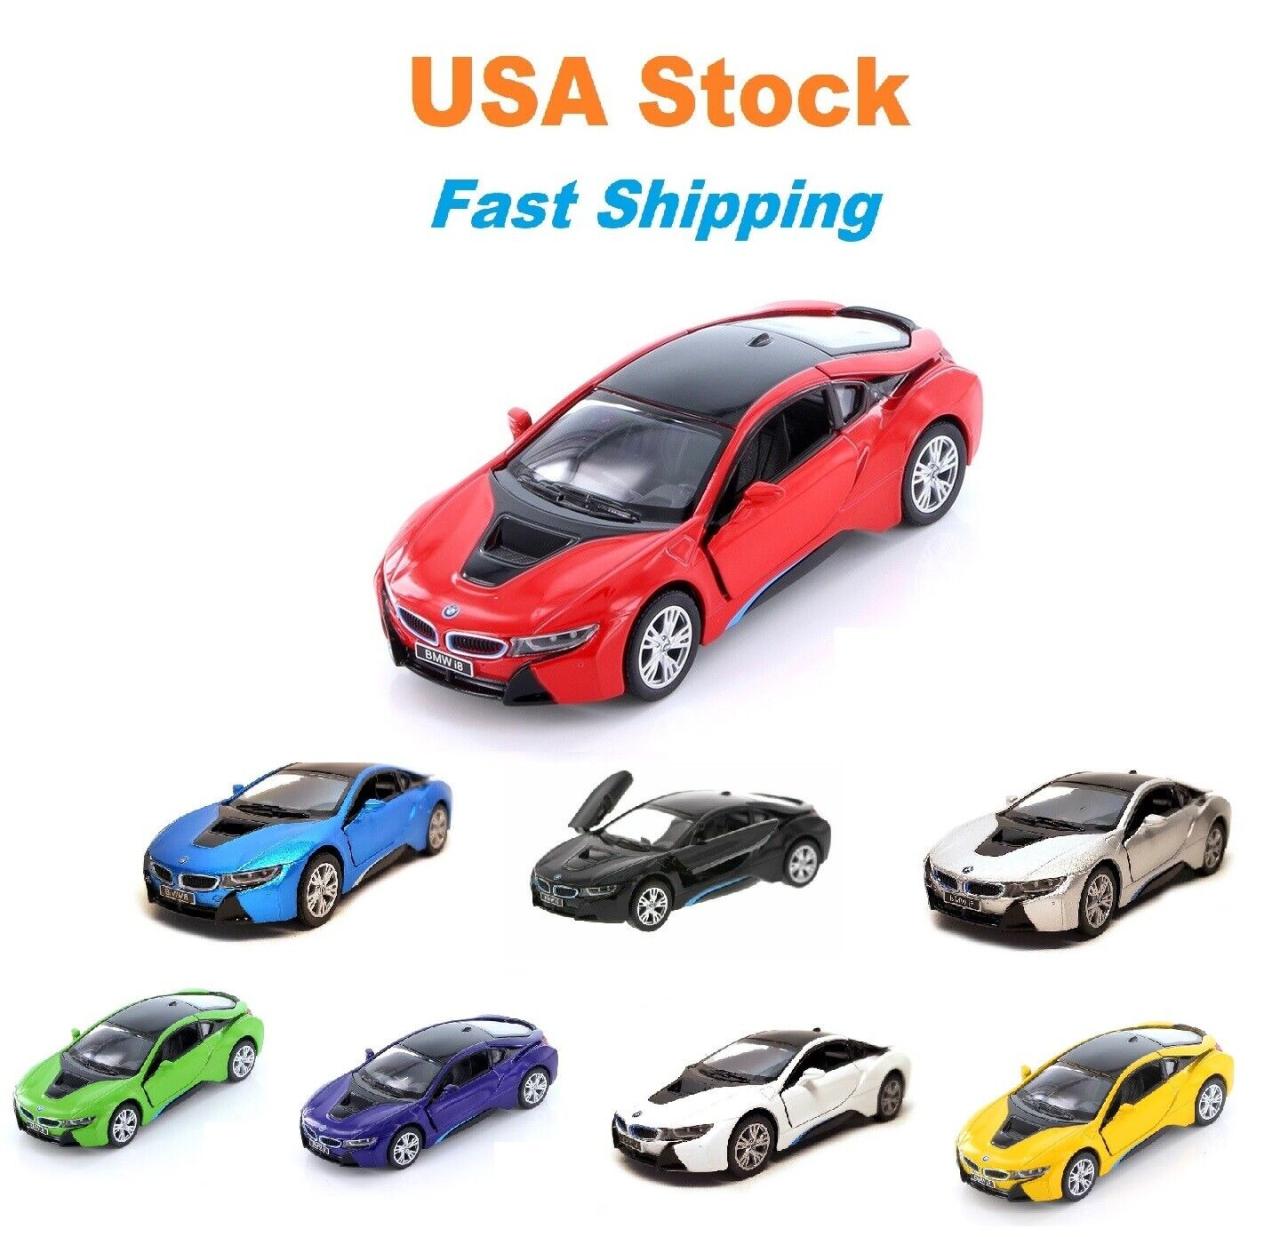 Bmw I8 Hard Top, Kinsmart, Diecast Model Toy Car, 5'', 1:36 Scale, 8 Colors  - Công Ty Tnhh Dịch Vụ Bảo Vệ Thăng Long Secom